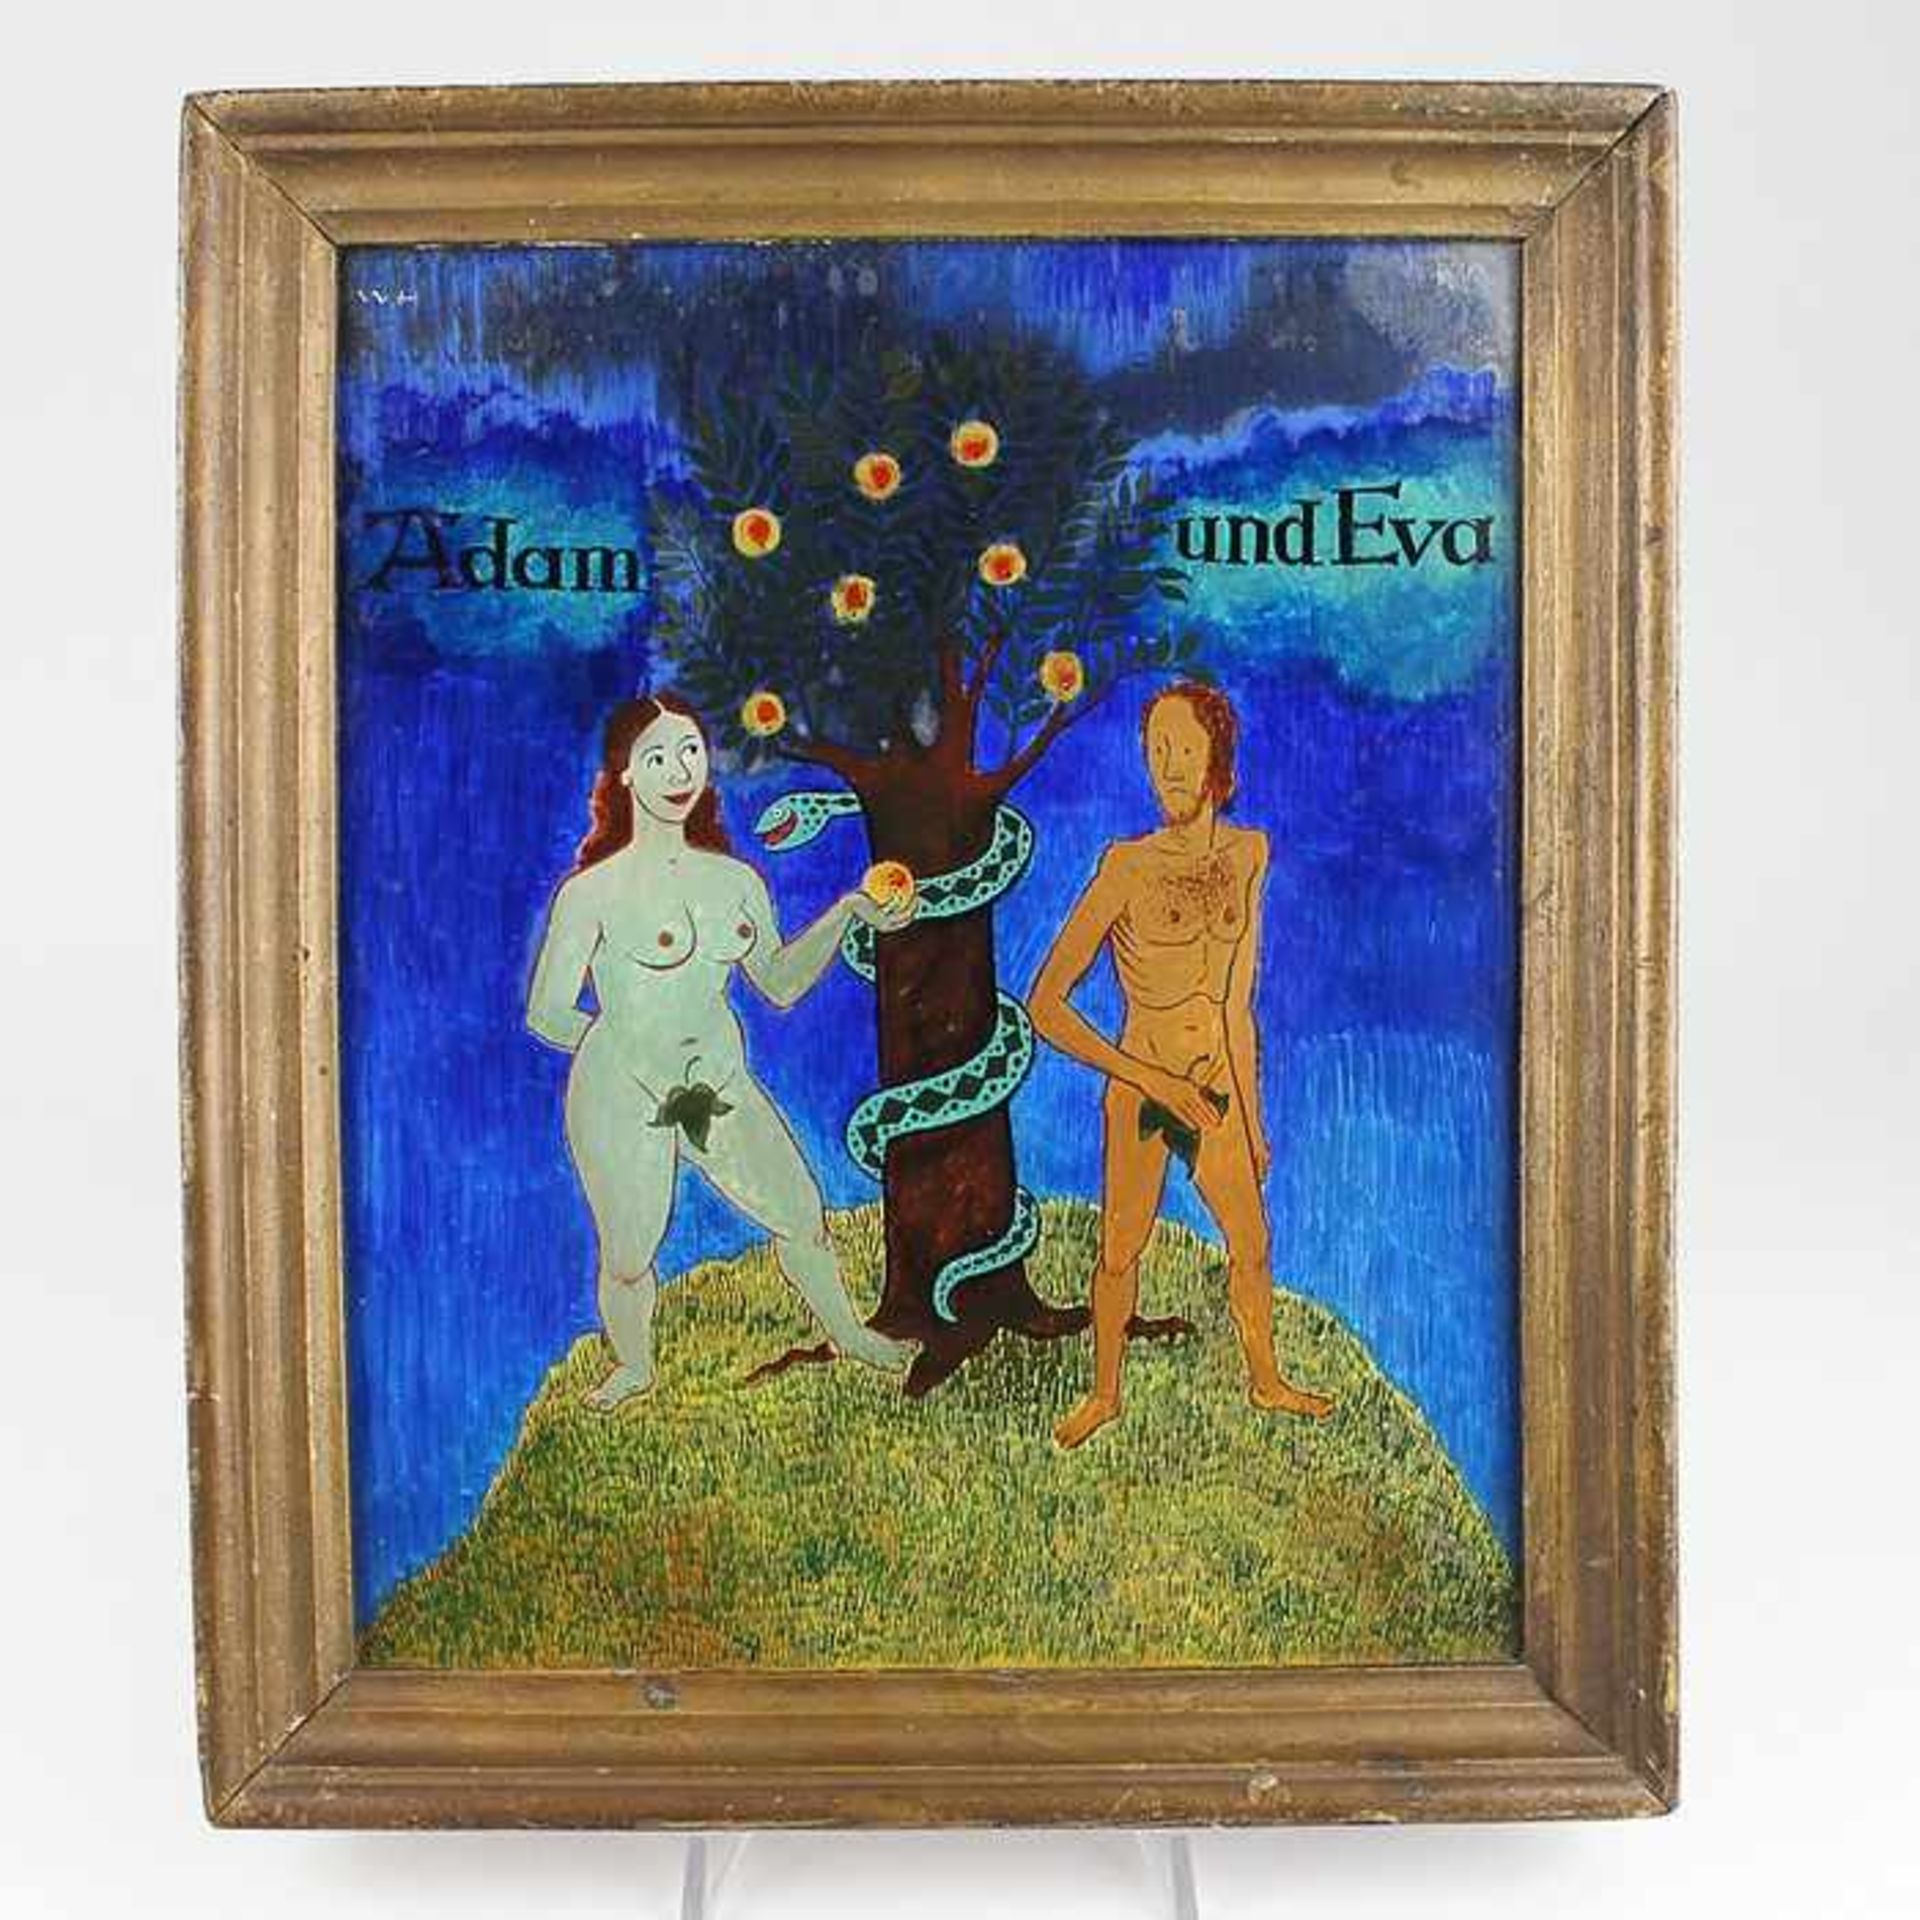 Unsigniertum 1920/30, "Adam und Eva", Hinterglasmalerei, naive Darstellung des Sündenfallmotives,